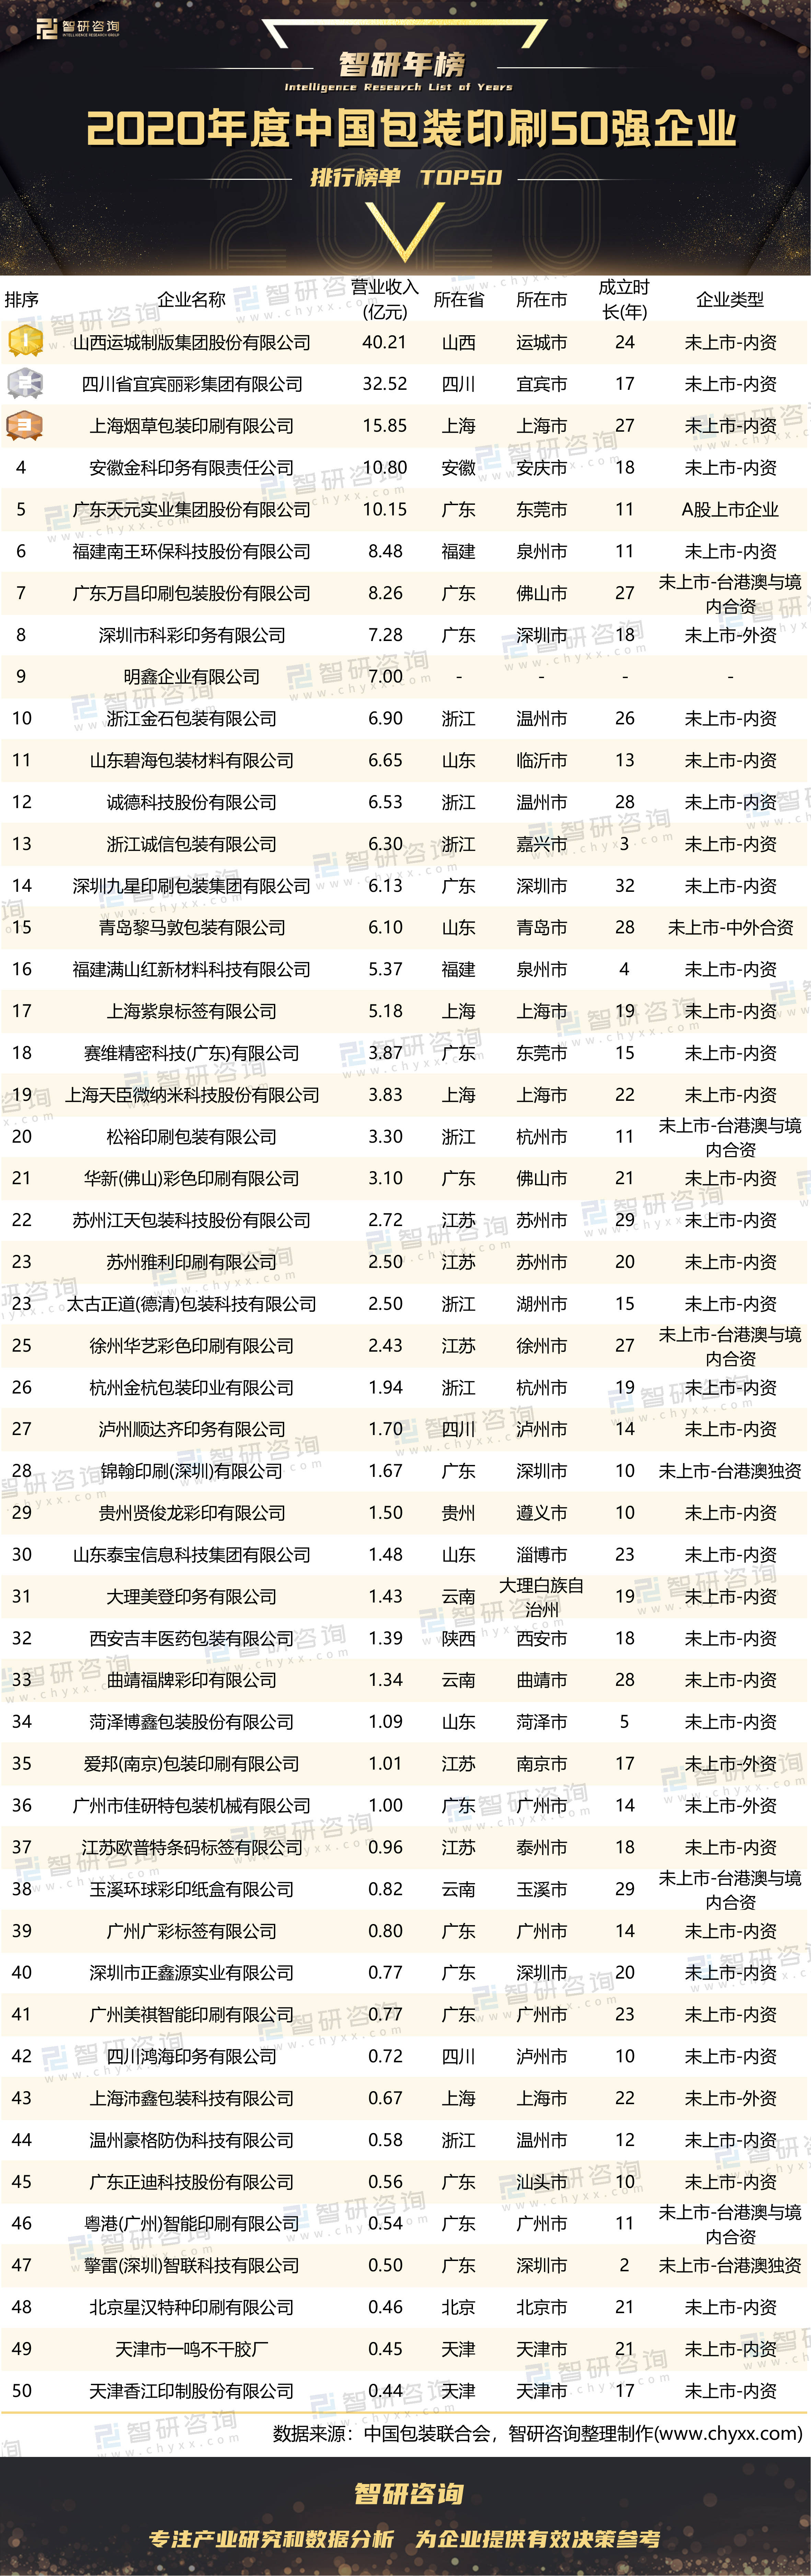 2020纸尿裤排行榜10强_2020年度中国包装印刷50强企业排行榜:5家企业营收超过10亿元(...